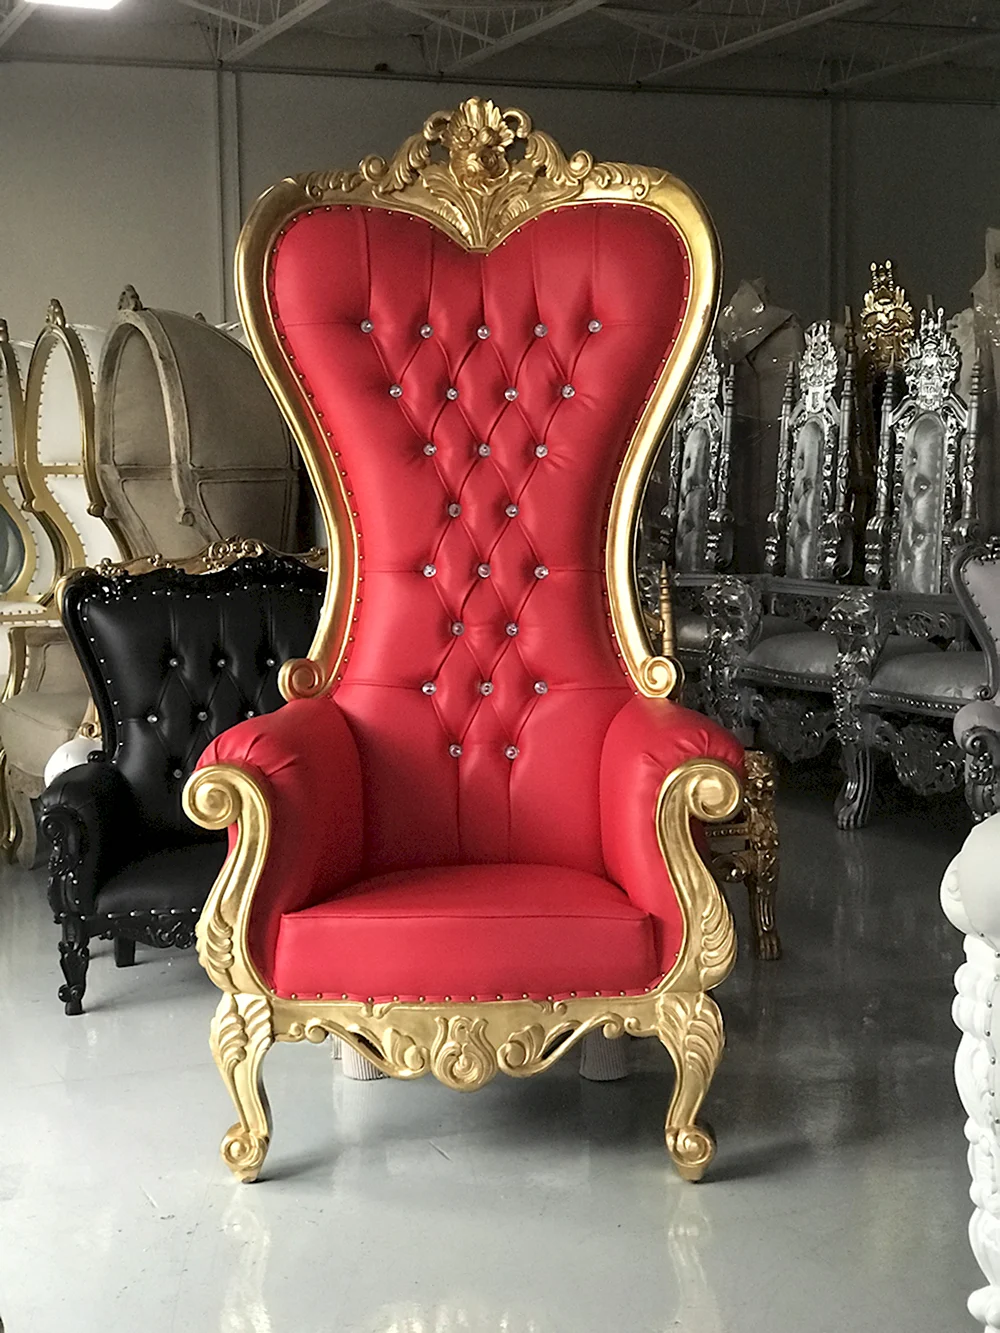 Королевская трон для королевы